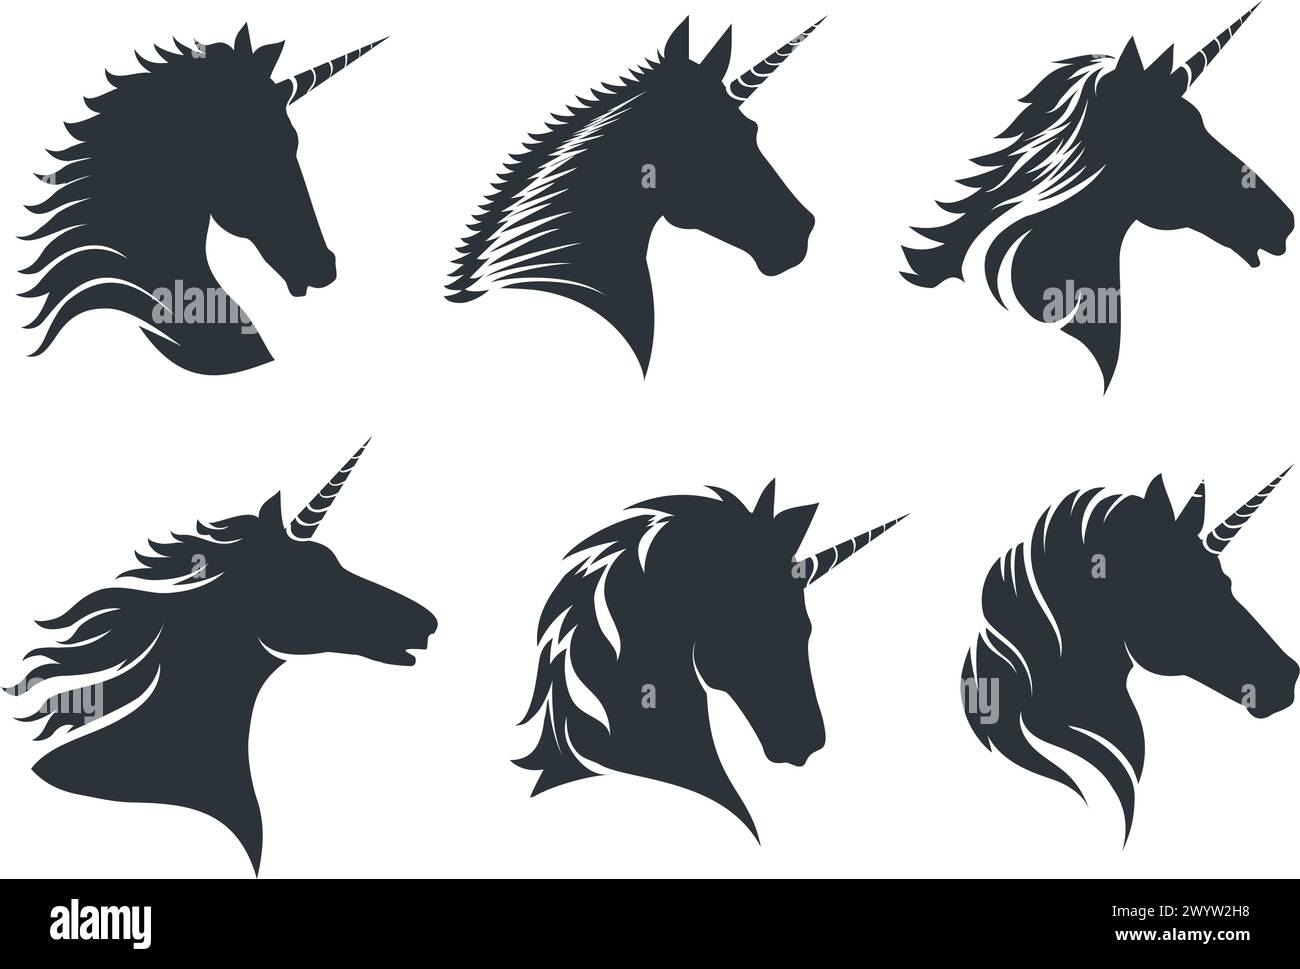 Unicorn head black icons Stock Vector